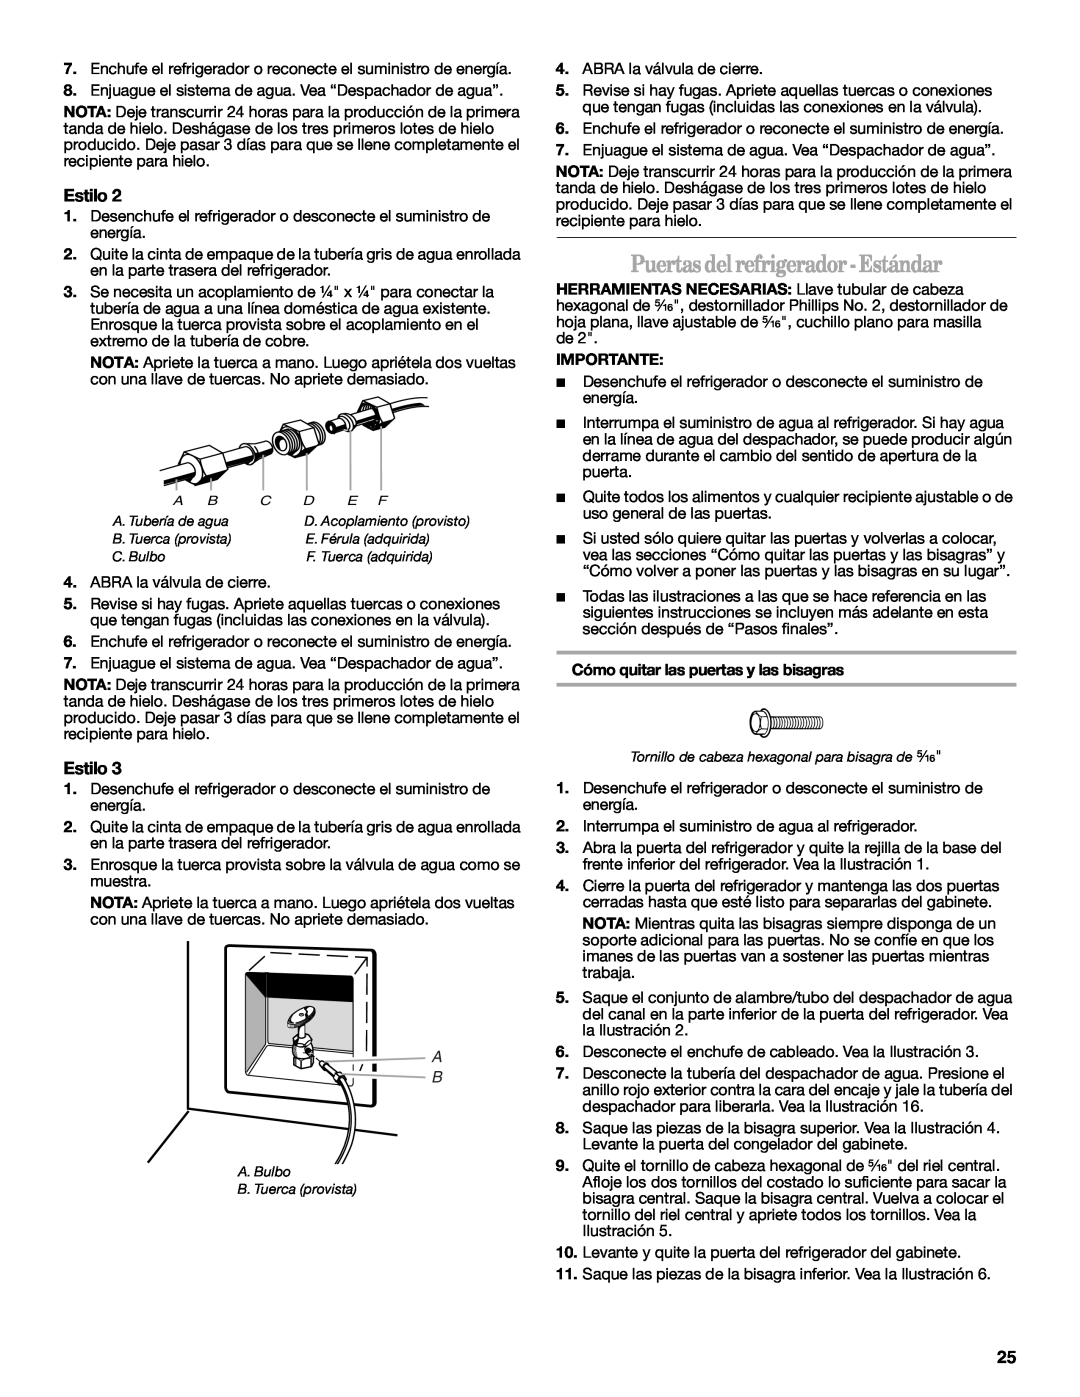 Whirlpool 2302309 warranty Puertas del refrigerador-Estándar, Cómo quitar las puertas y las bisagras, Estilo, Importante 